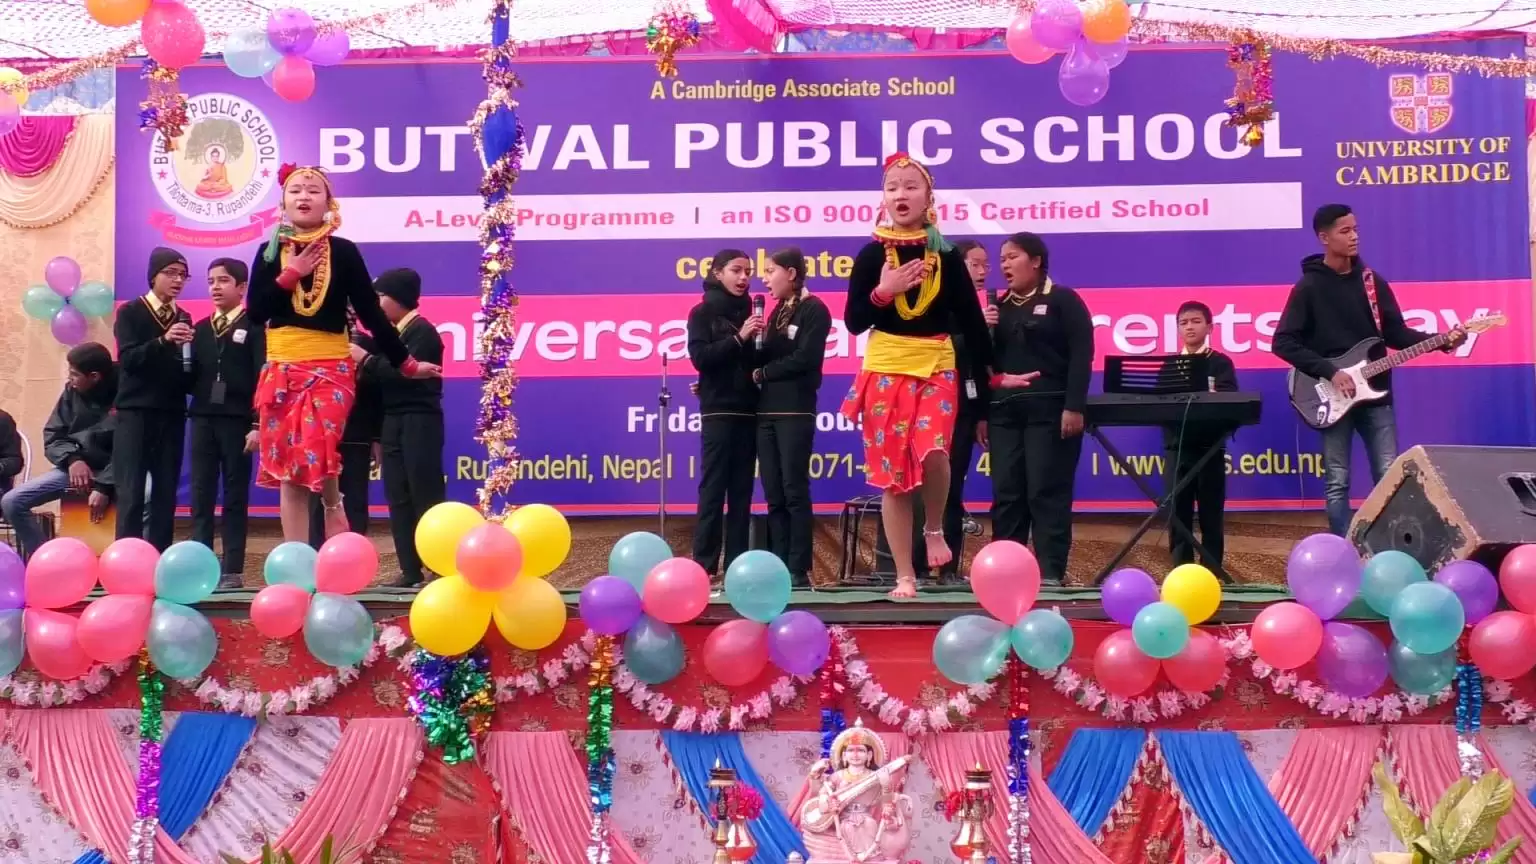 Butwal Public School